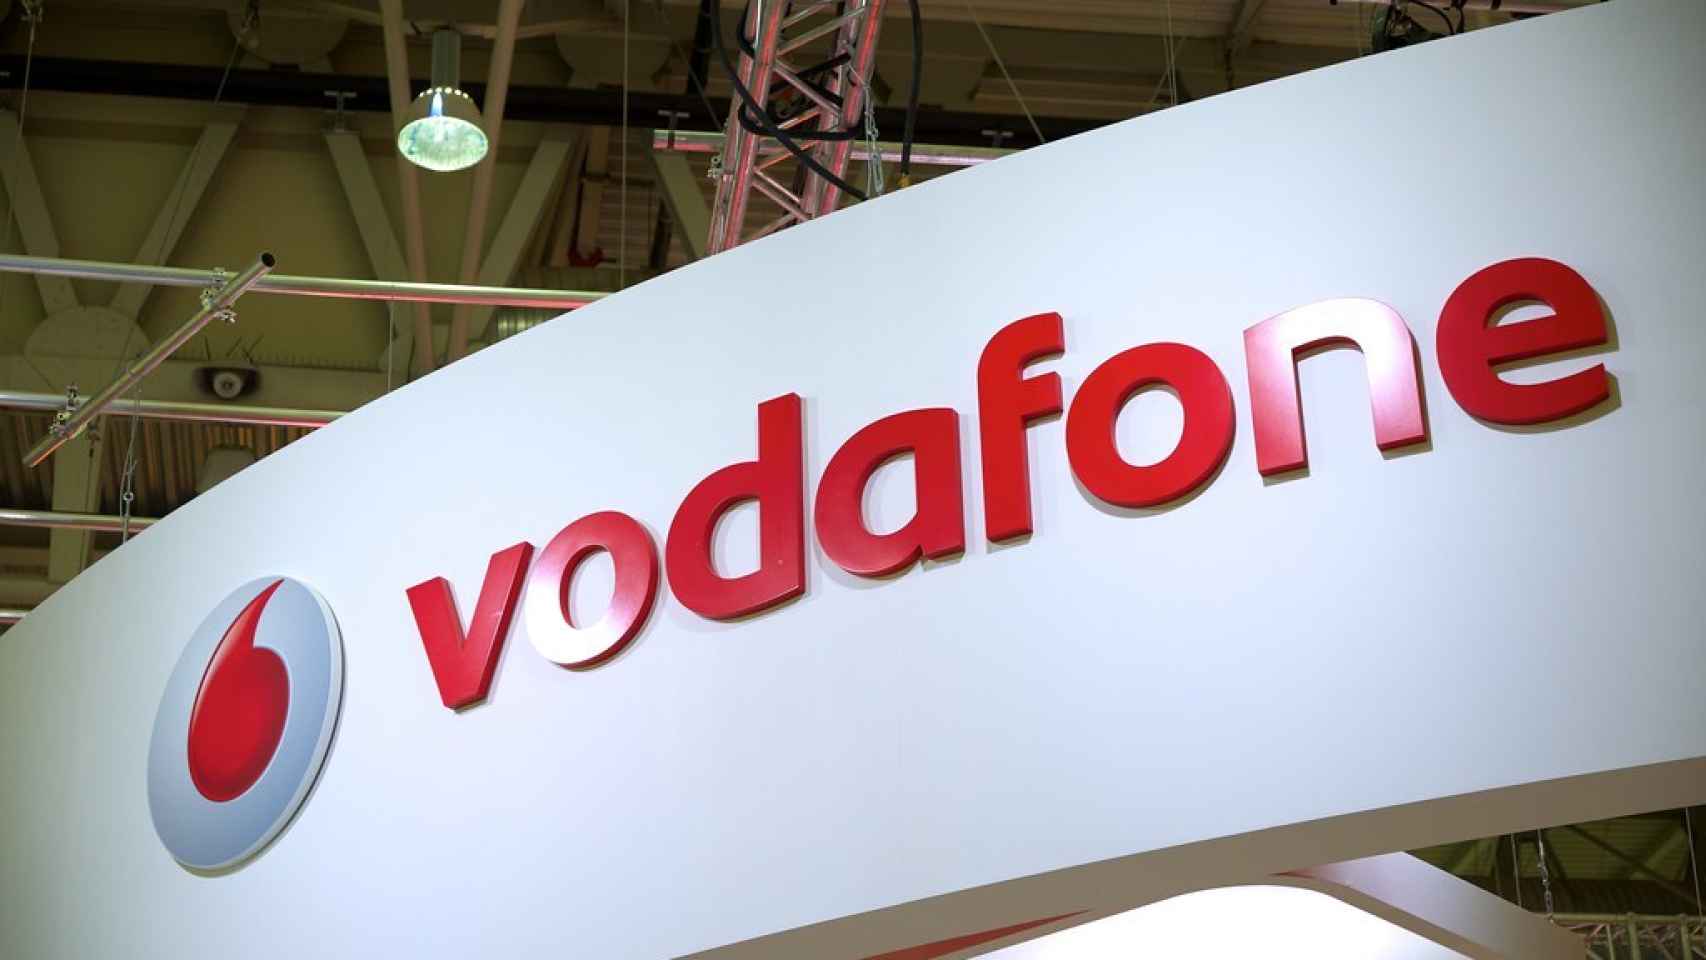 Logo de Vodafone, en una imagen de archivo.